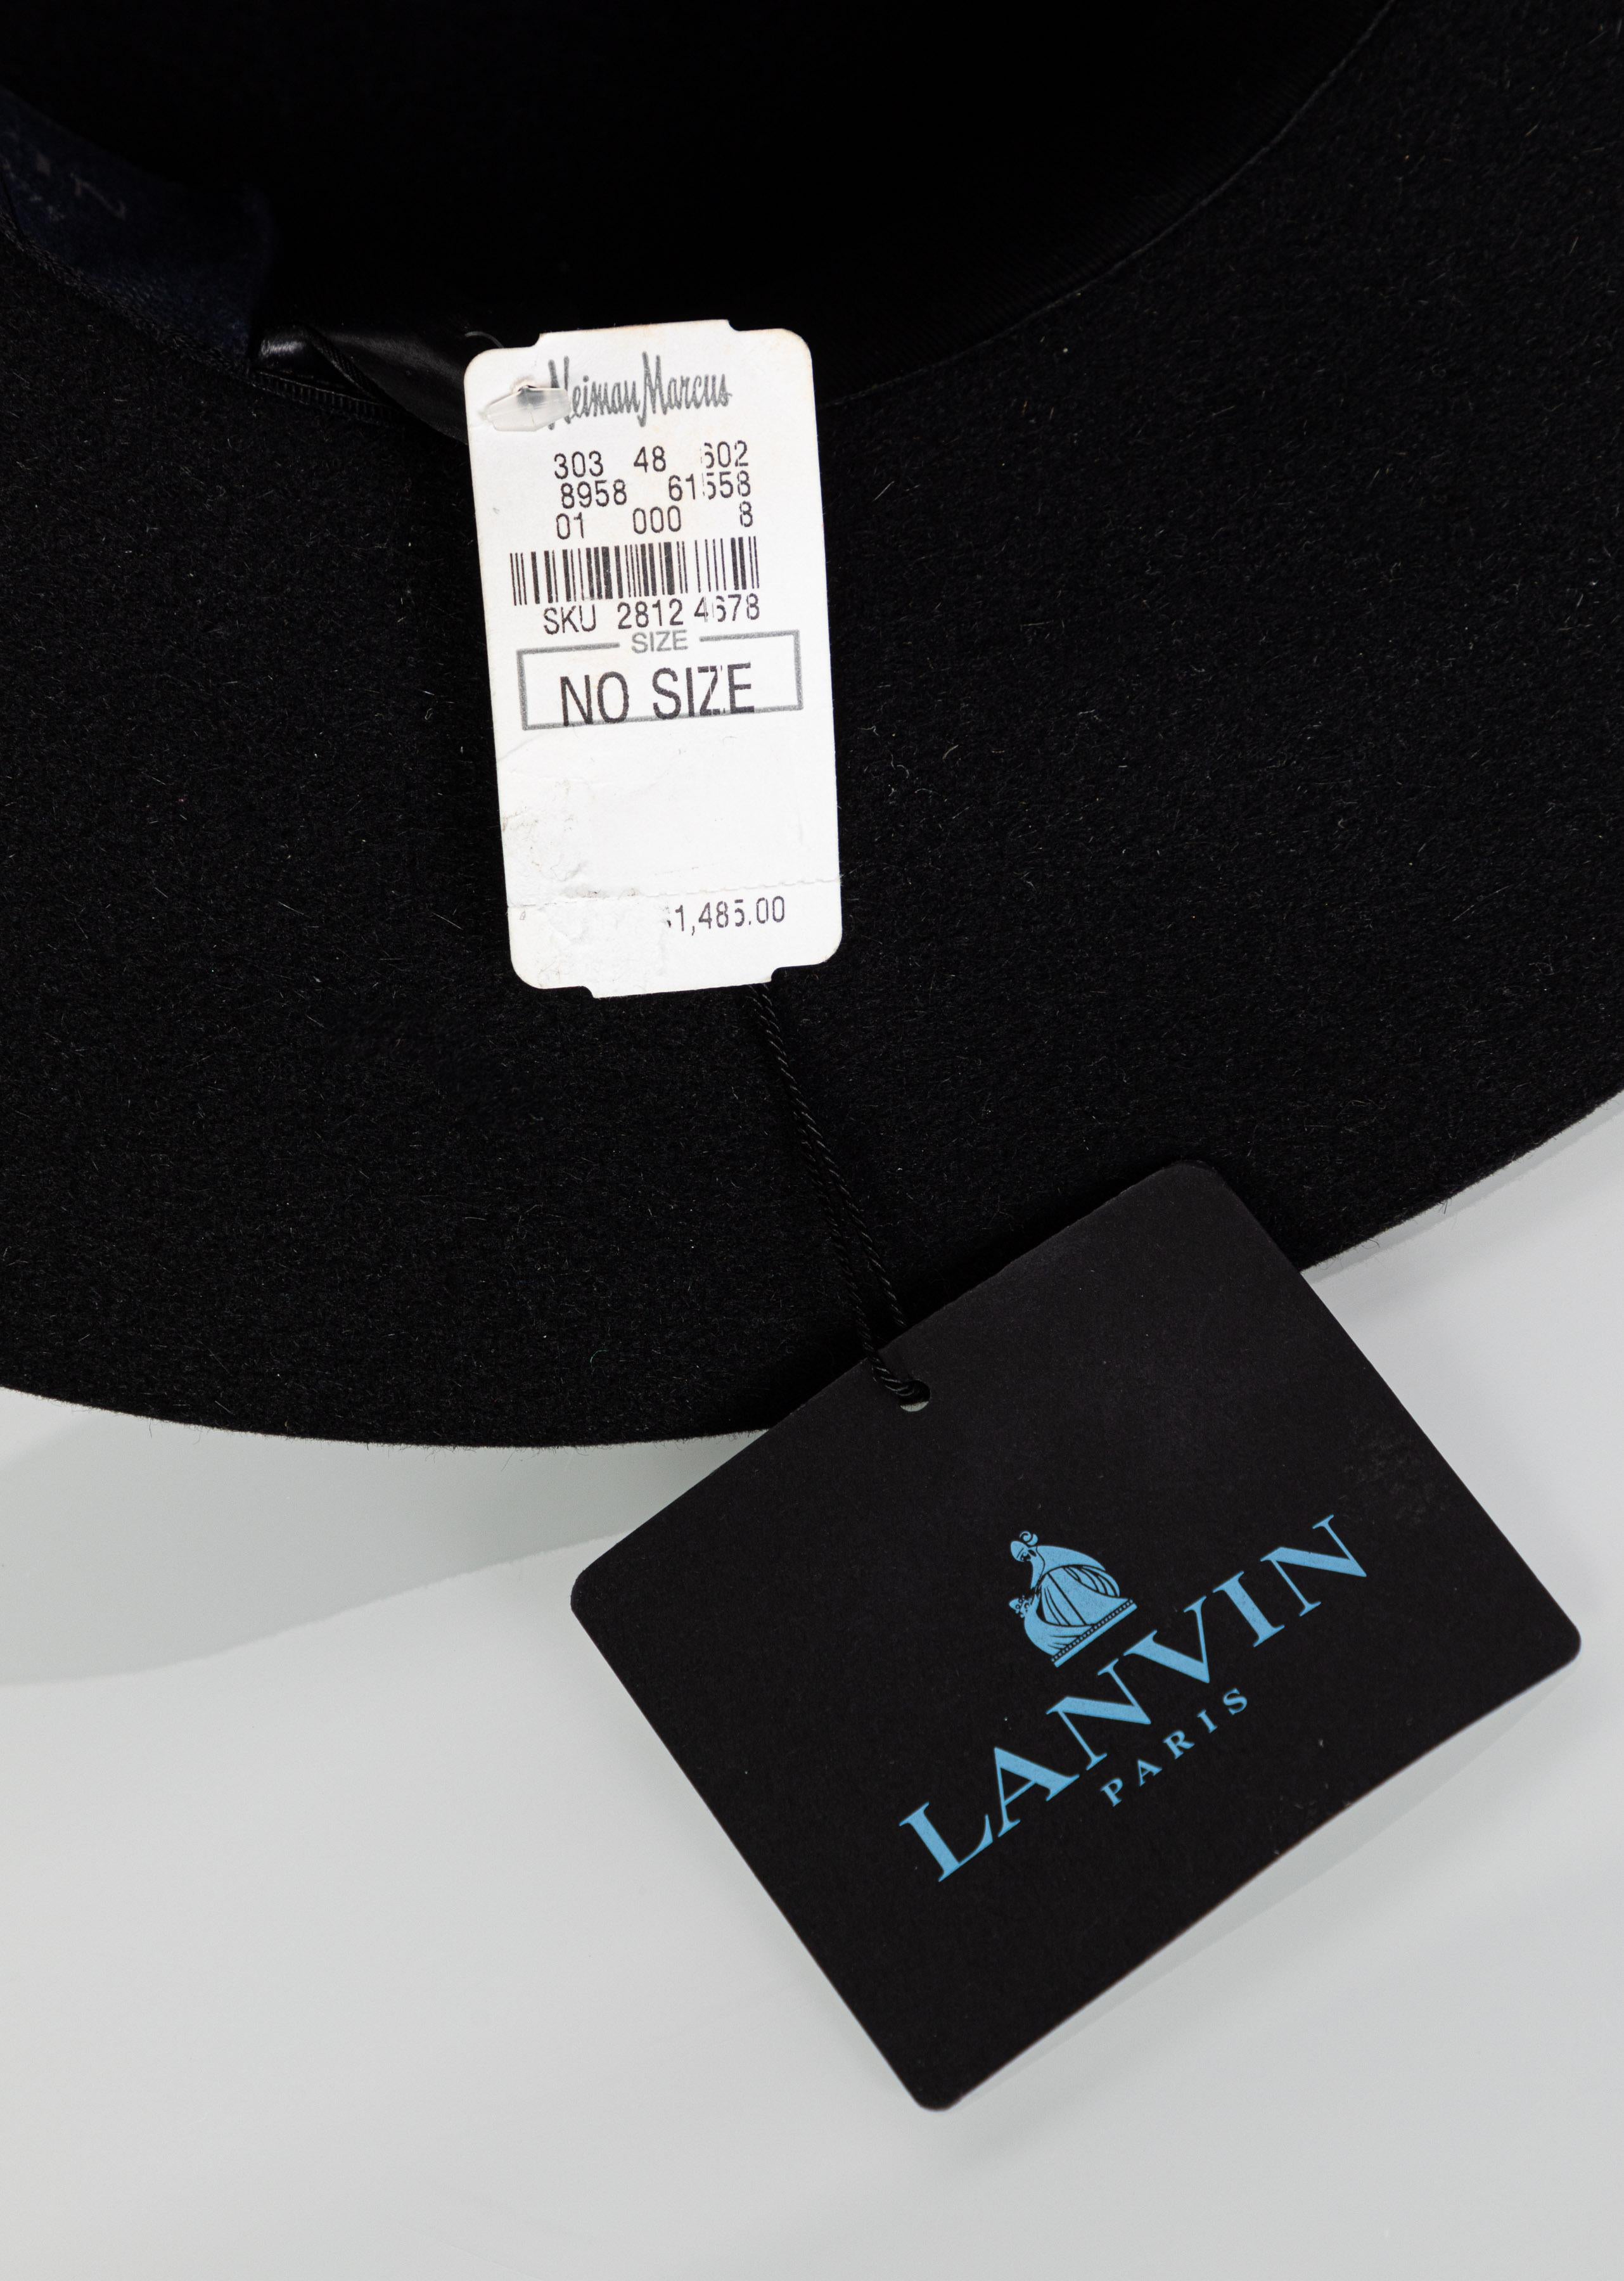 Lanvin Alber Elbaz Embellished Black Felt Hat, 2015 6